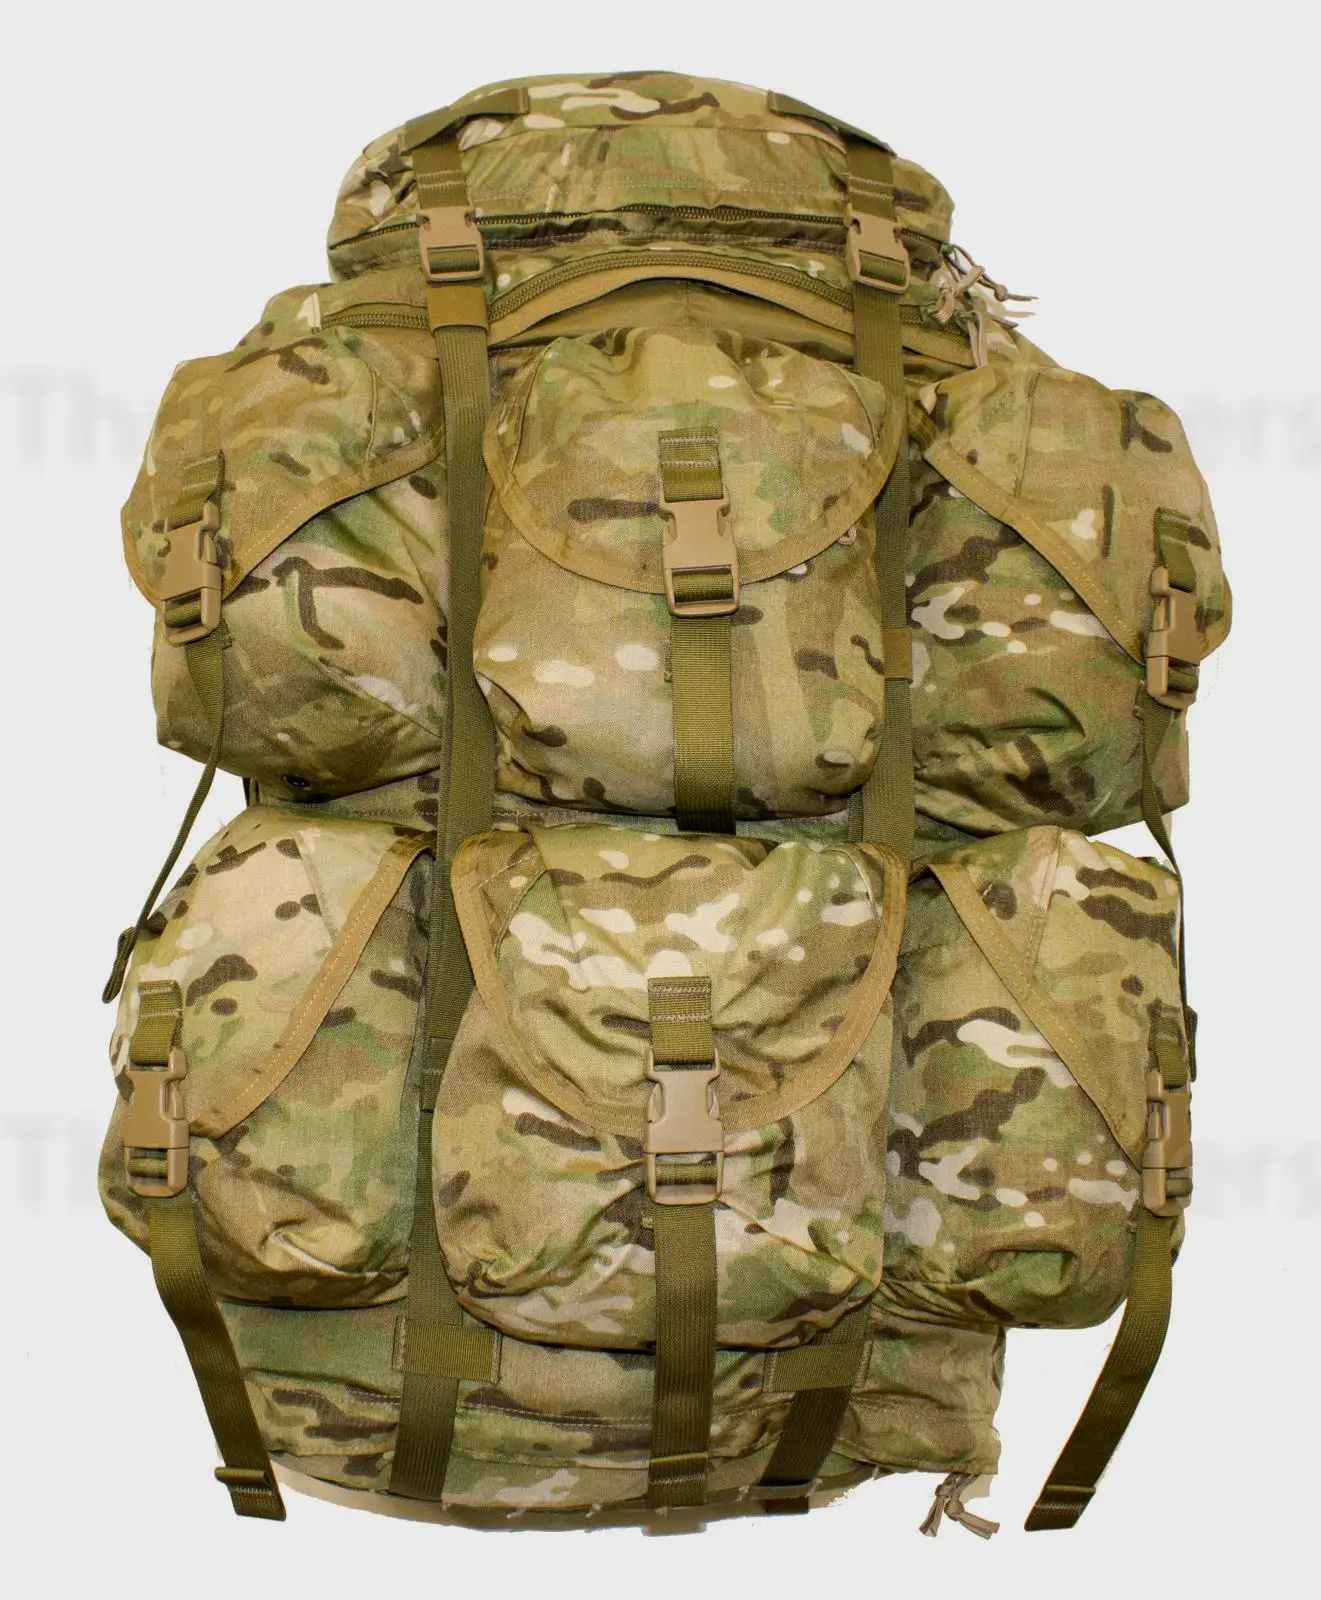 LBT-2657 Eight Pocket Light Backpack Kit